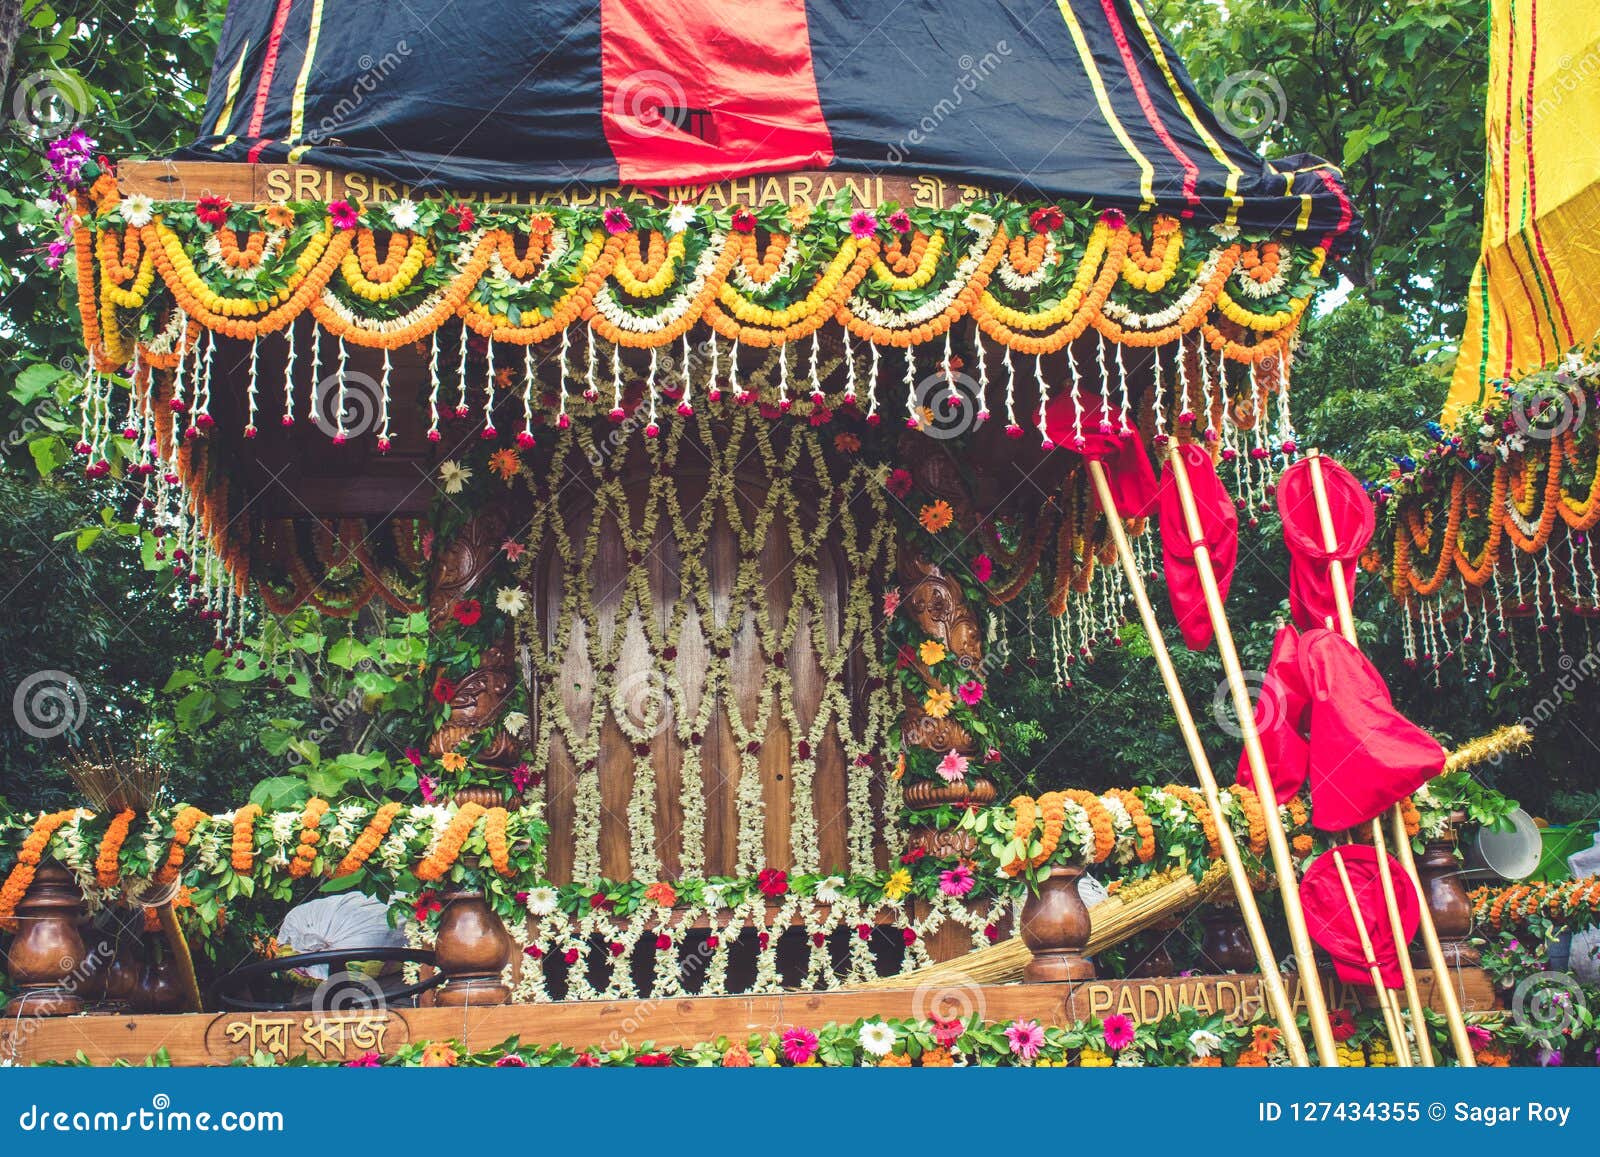 rath yeatra mayapur colorful, celebration.